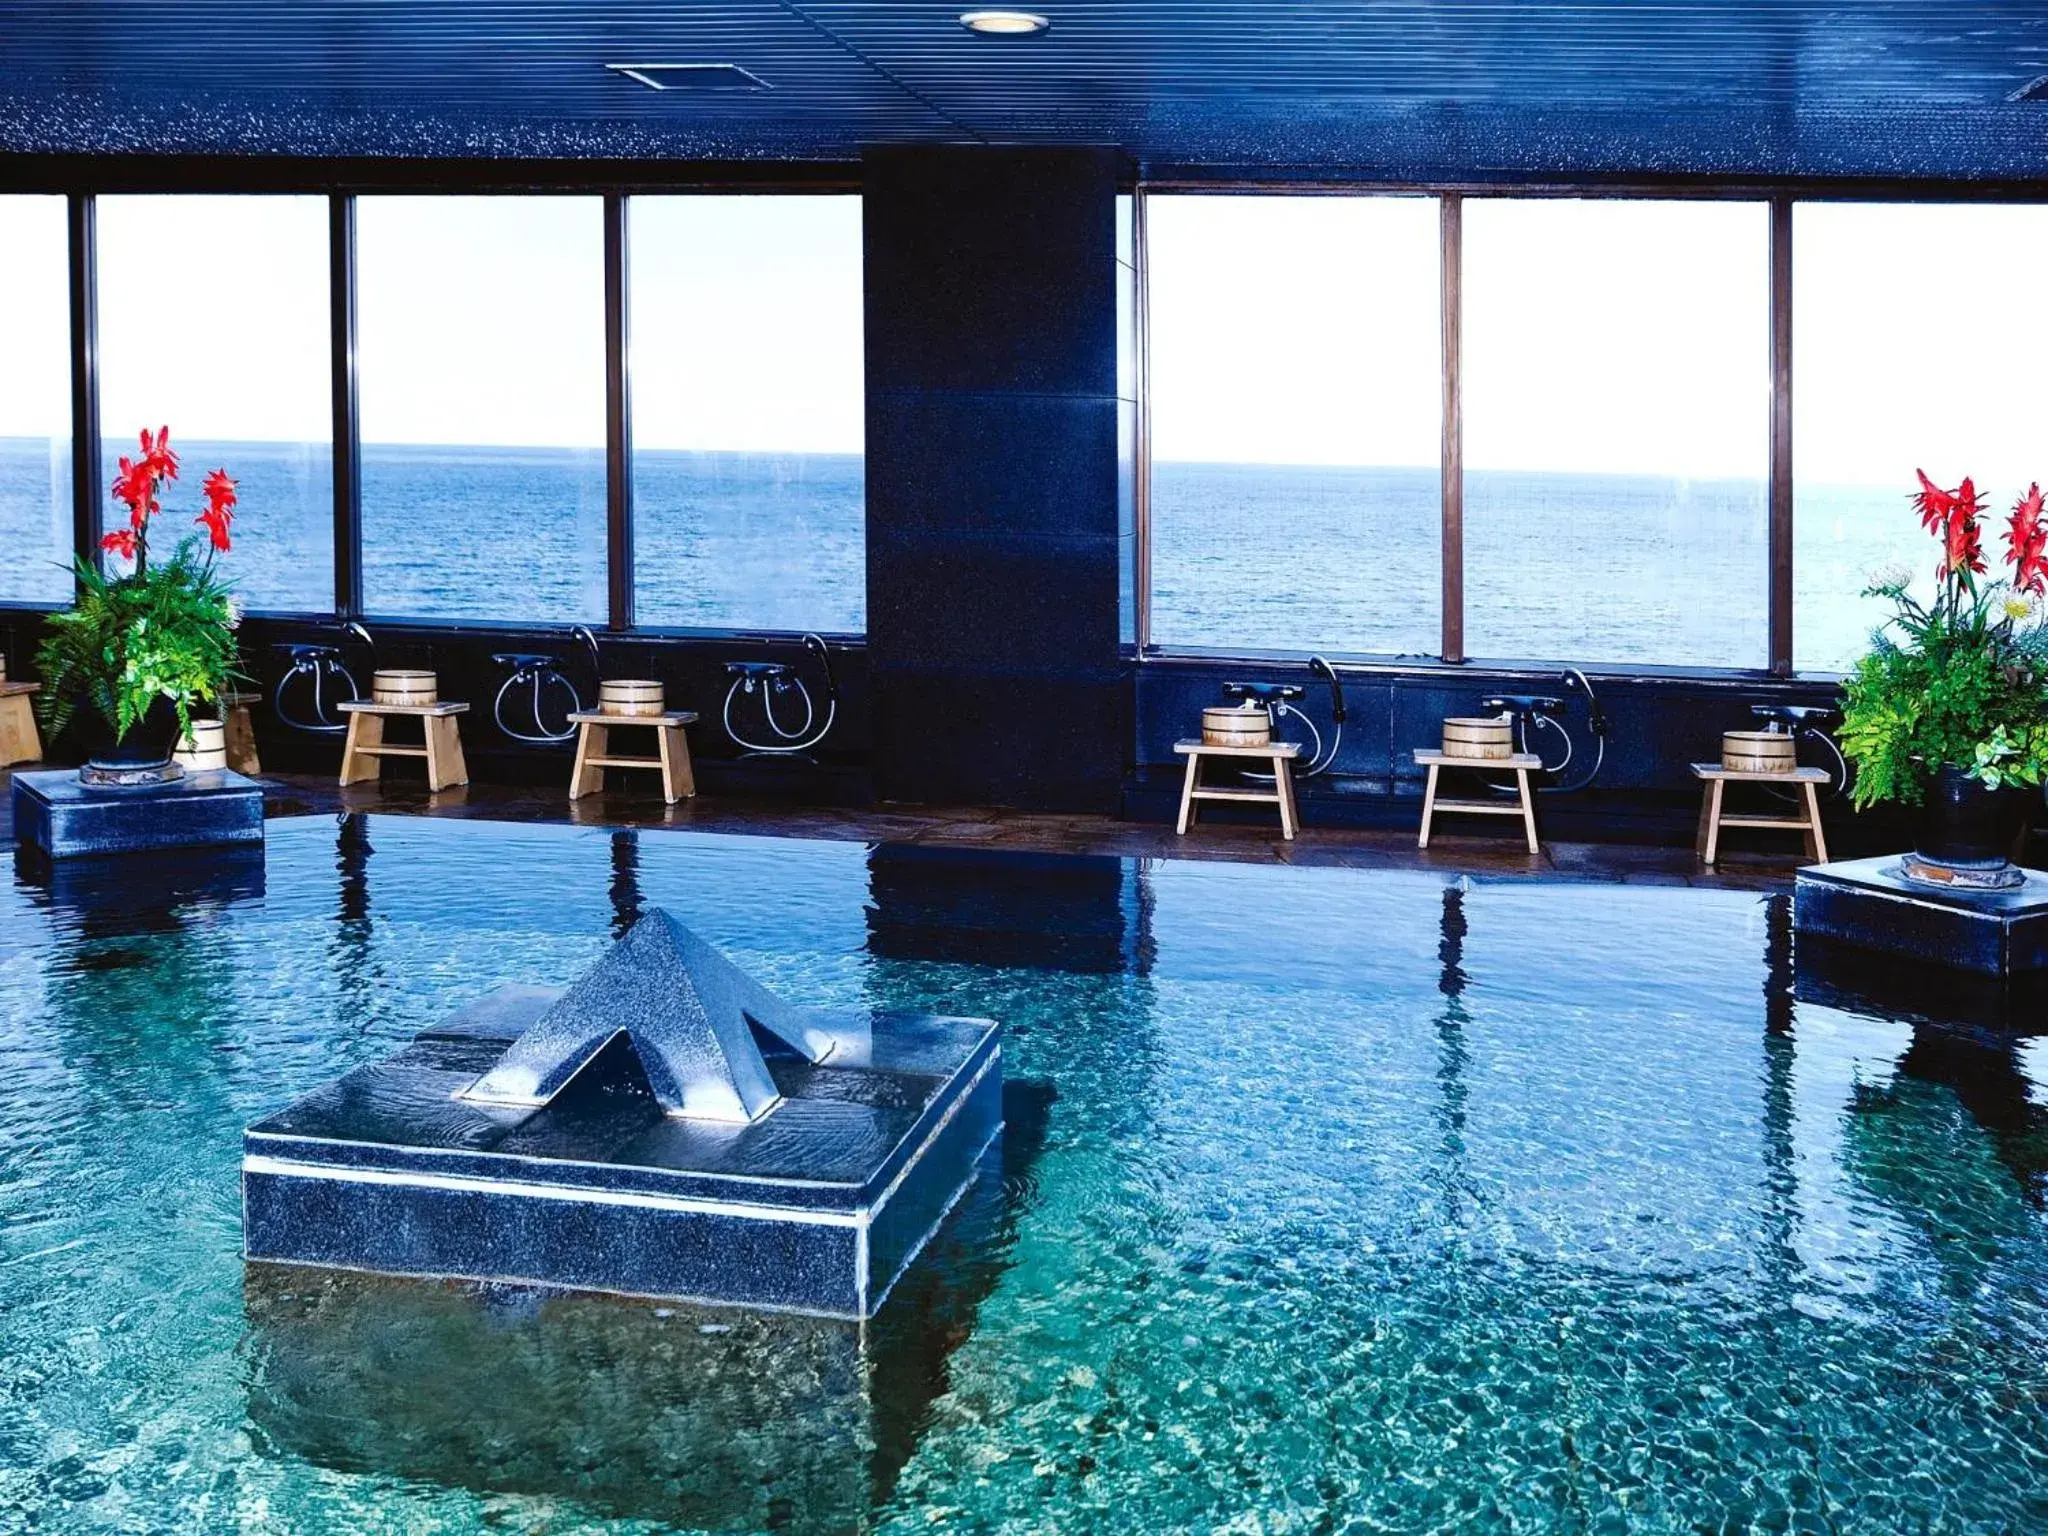 Hot Spring Bath, Swimming Pool in Hotel Resorpia Atami